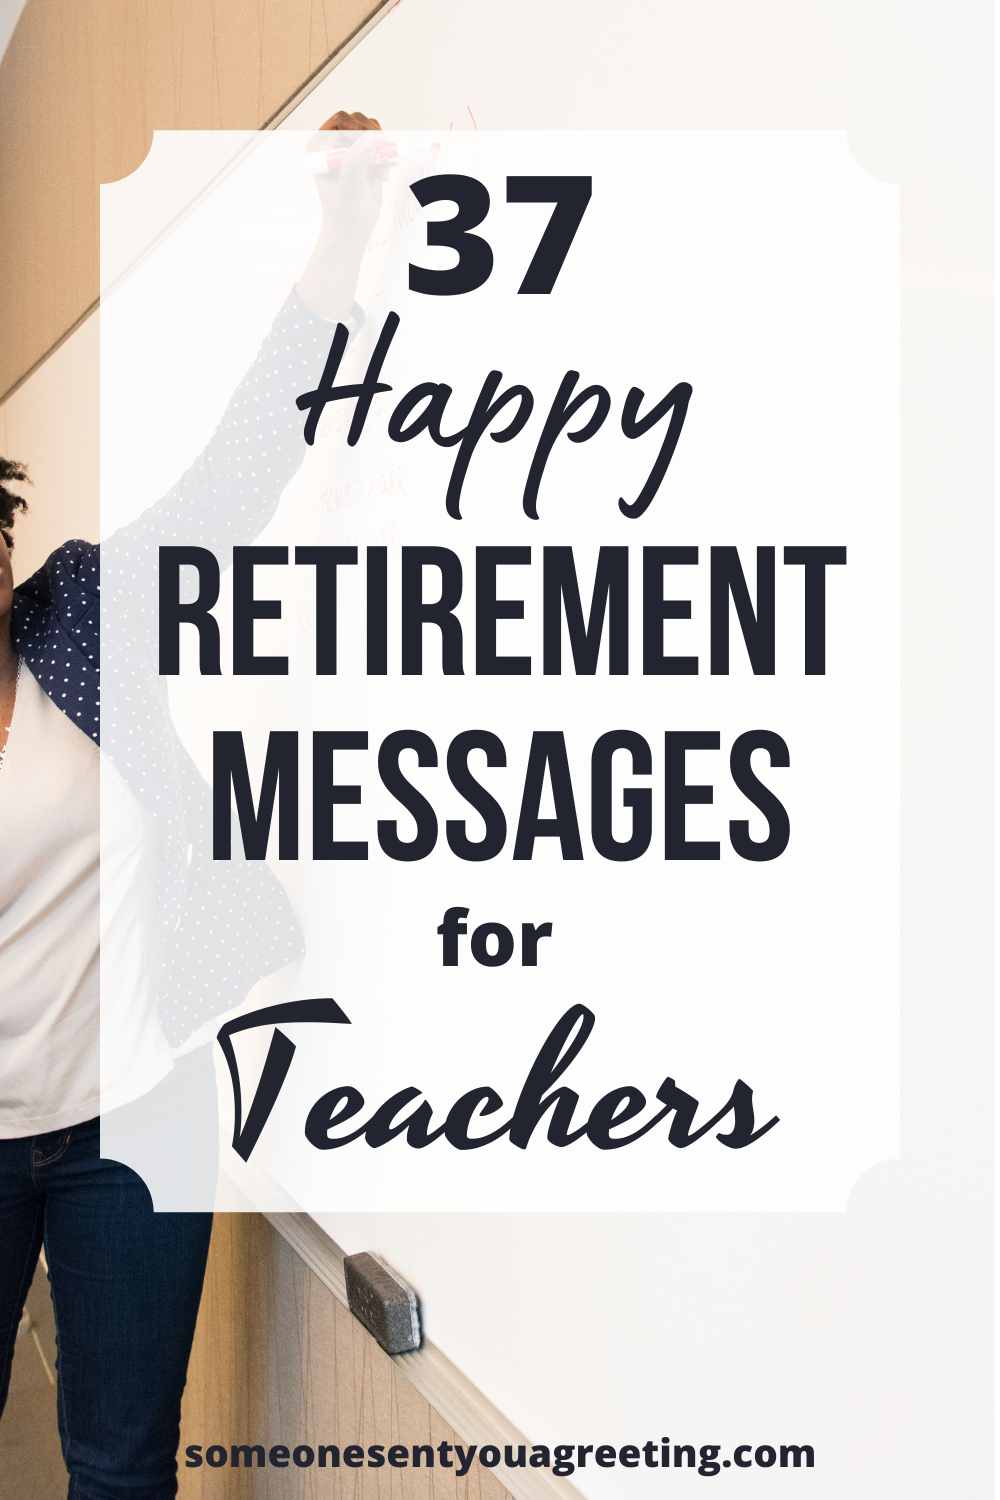 Retirement messages for teachers